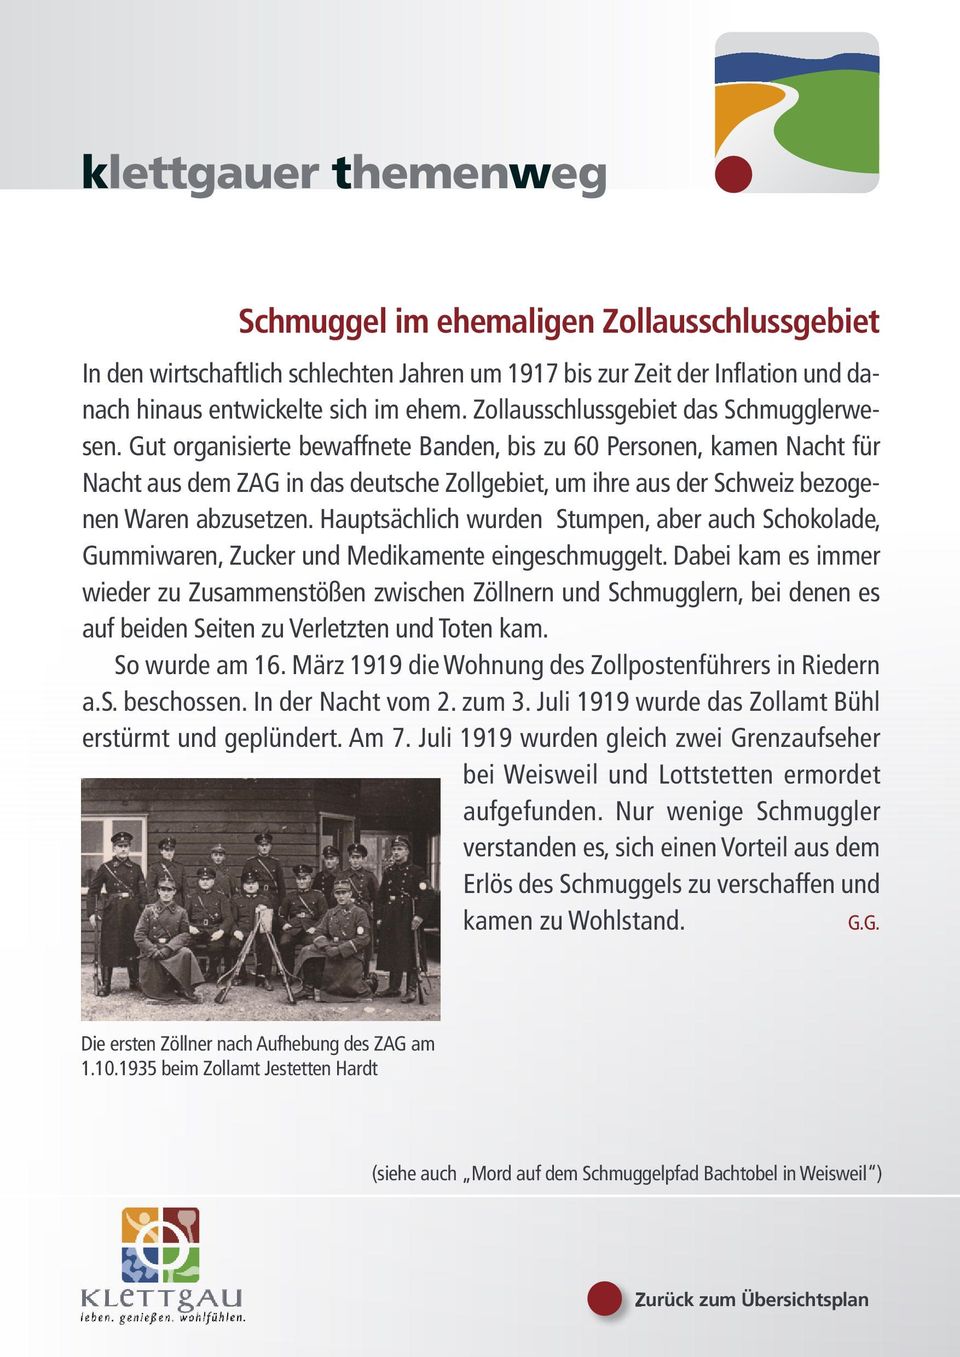 Gut organisierte bewaffnete Banden, bis zu 60 Personen, kamen Nacht für Nacht aus dem ZAG in das deutsche Zollgebiet, um ihre aus der Schweiz bezogenen Waren abzusetzen.